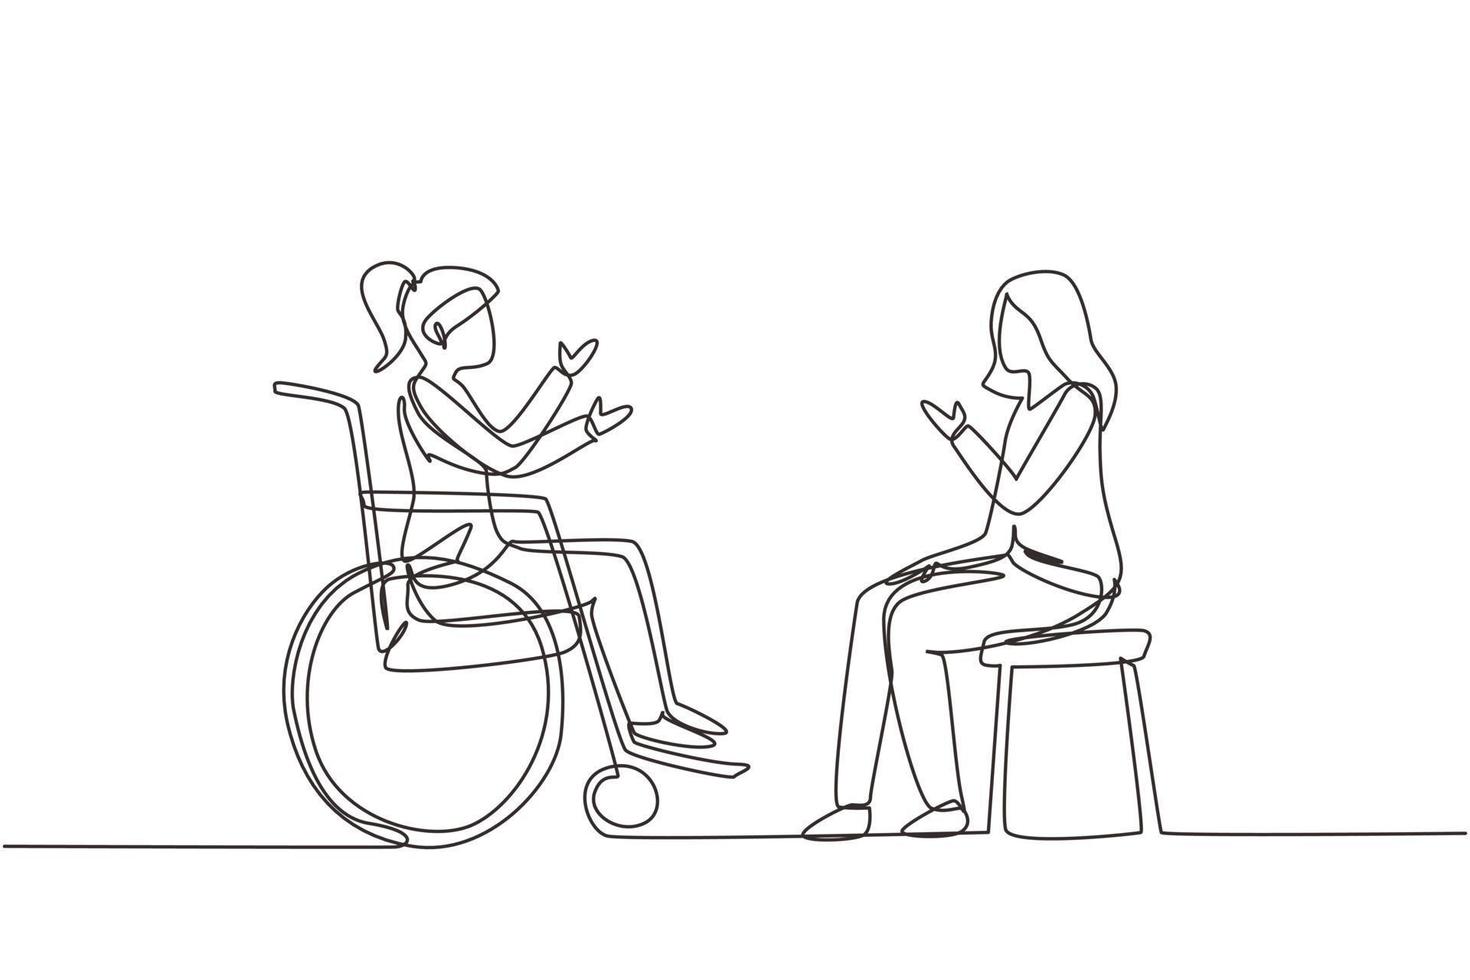 un unico disegno di una linea due persone sedute a chiacchierare, una che usa una sedia e una che usa una sedia a rotelle. le donne amichevoli stanno parlando tra loro, la società umana disabile. vettore di disegno a linea continua